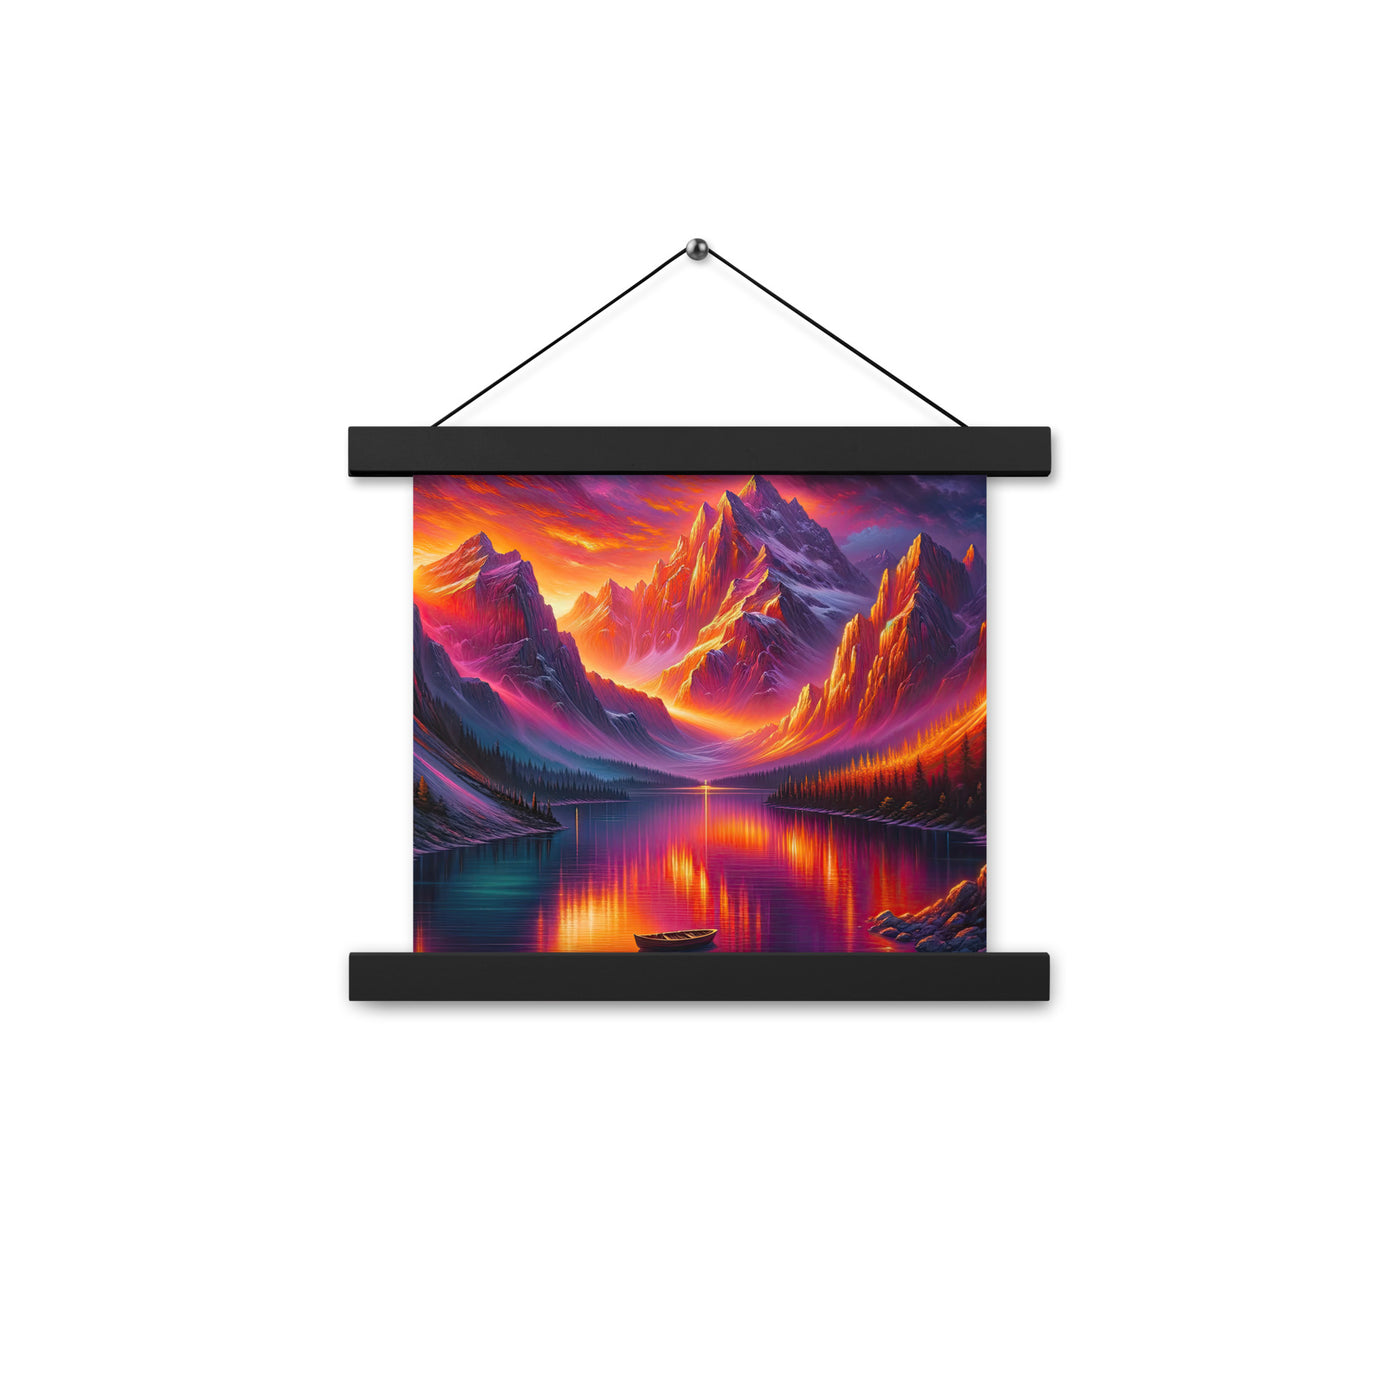 Ölgemälde eines Bootes auf einem Bergsee bei Sonnenuntergang, lebendige Orange-Lila Töne - Premium Poster mit Aufhängung berge xxx yyy zzz 25.4 x 25.4 cm